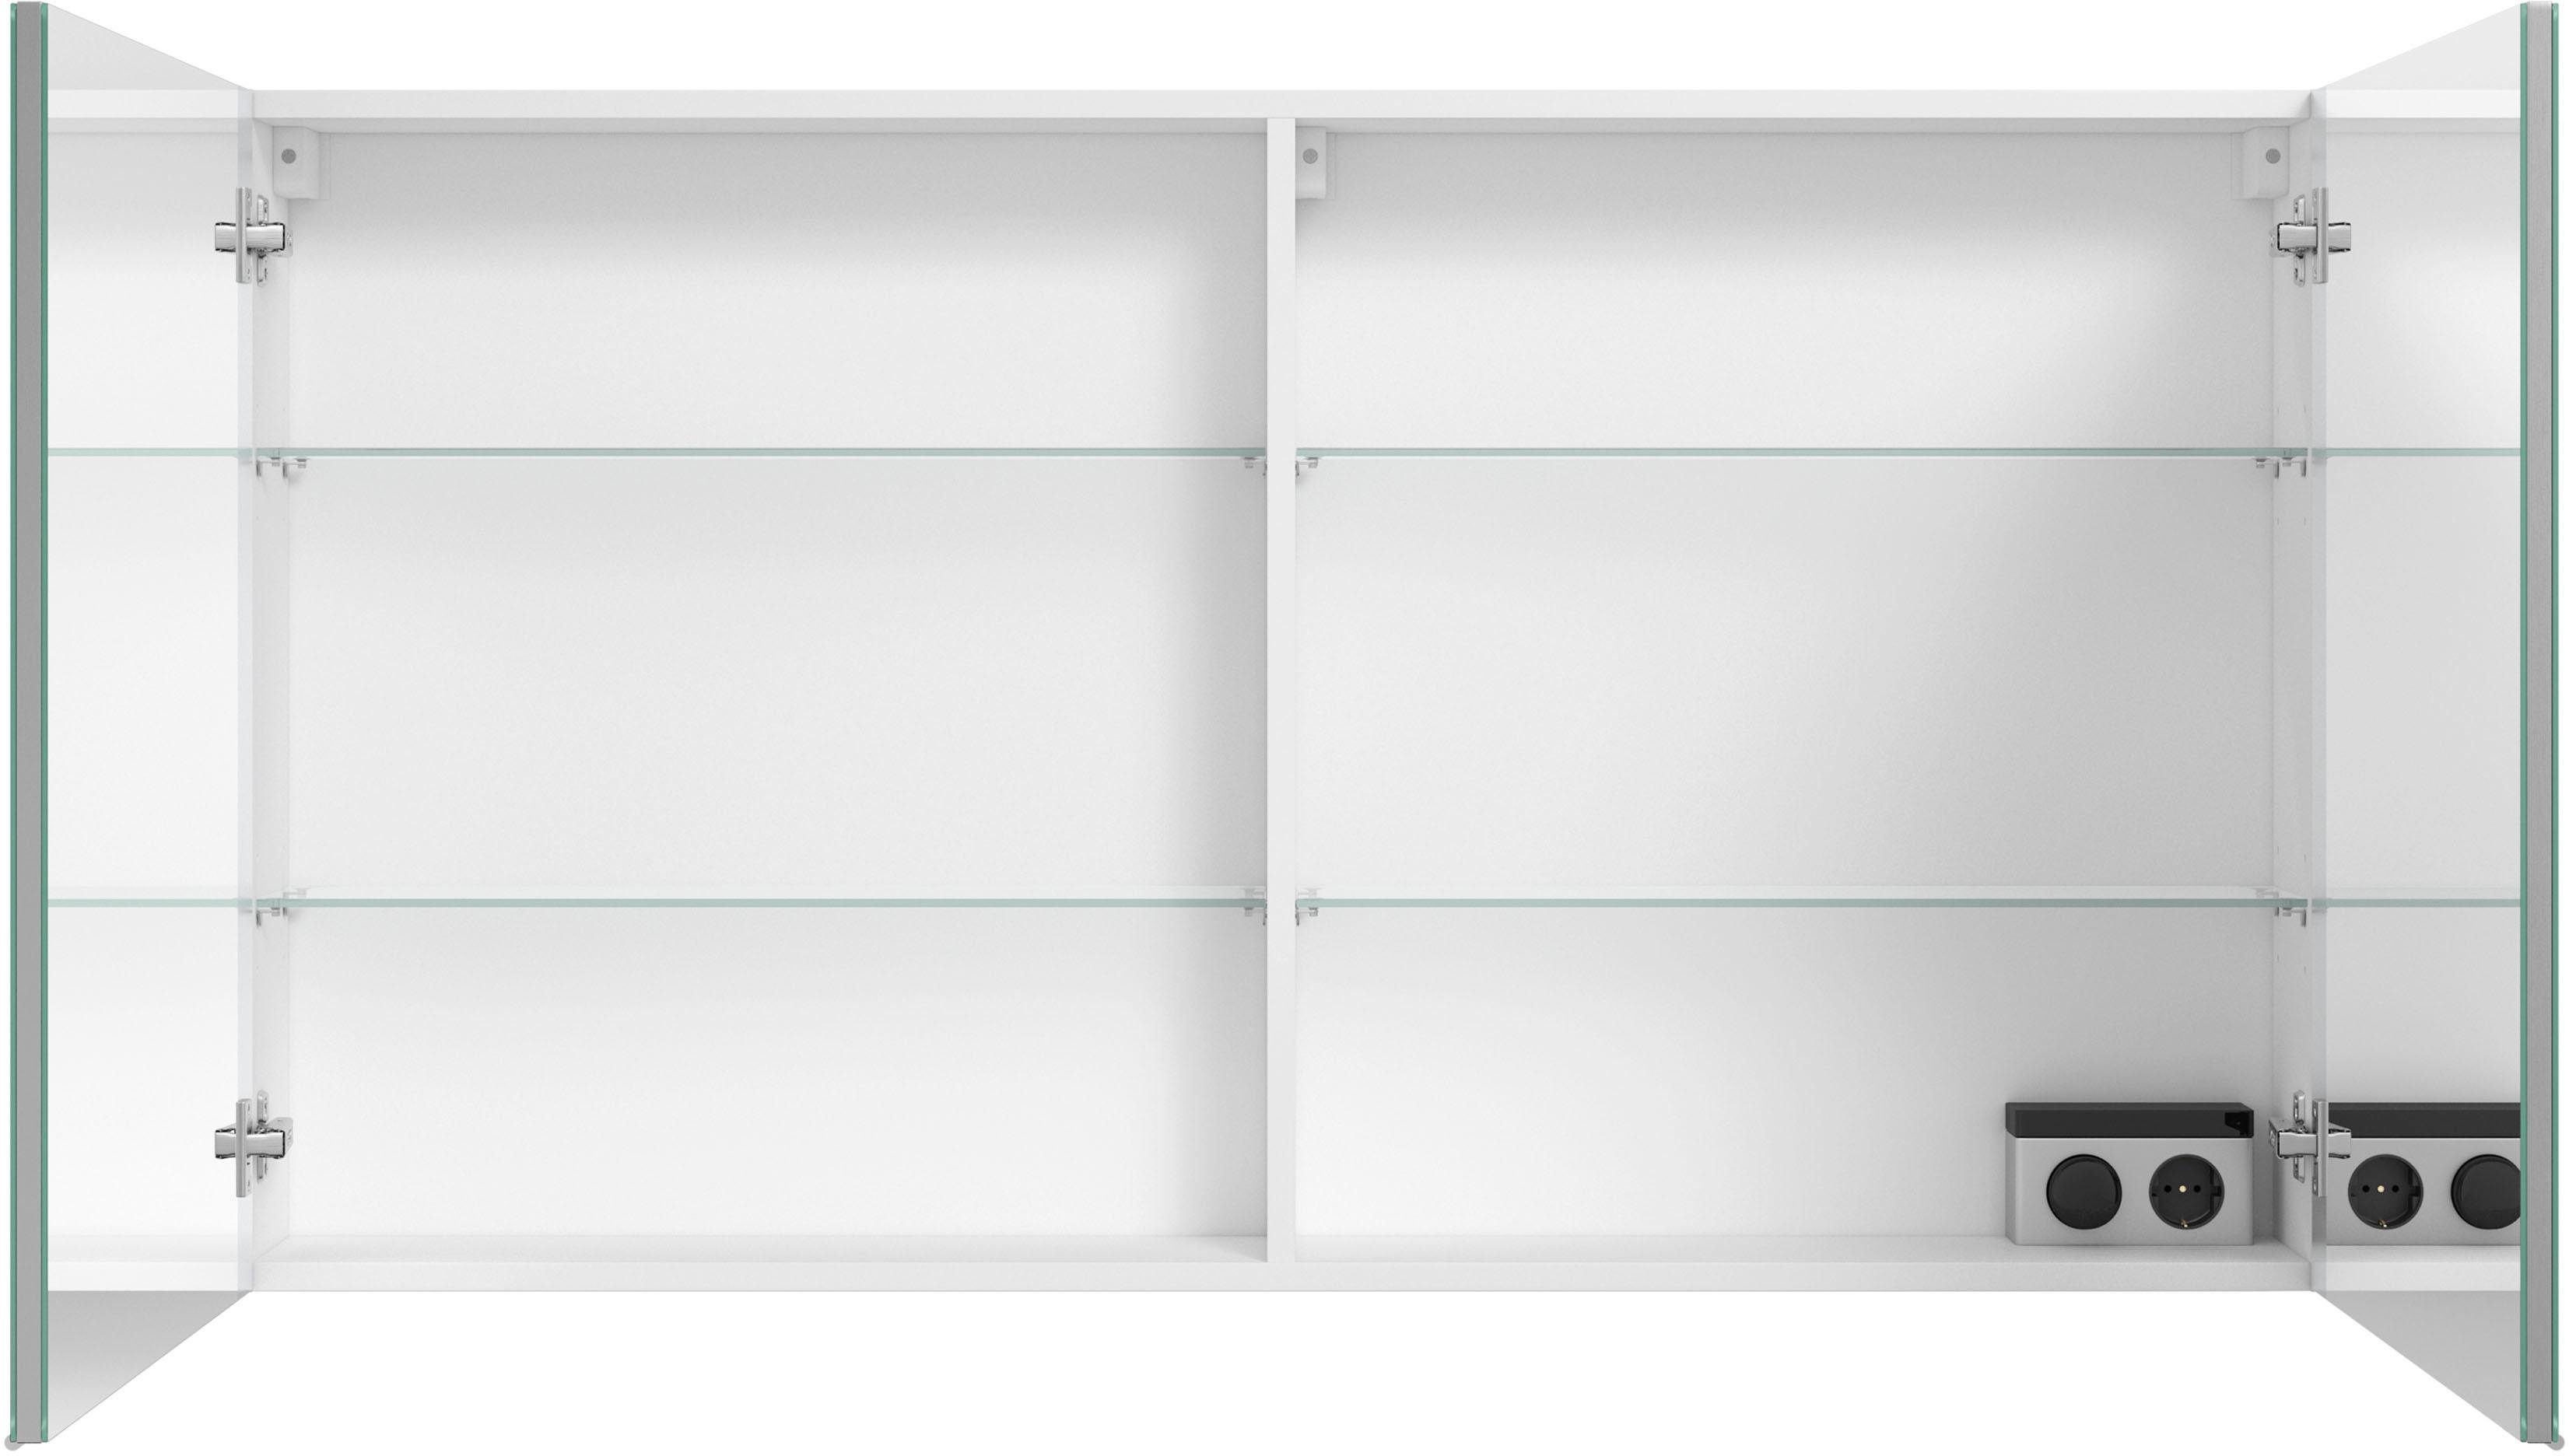 MARLIN Spiegelschrank 3980 mit vormontiert doppelseitig Türen, verspiegelten